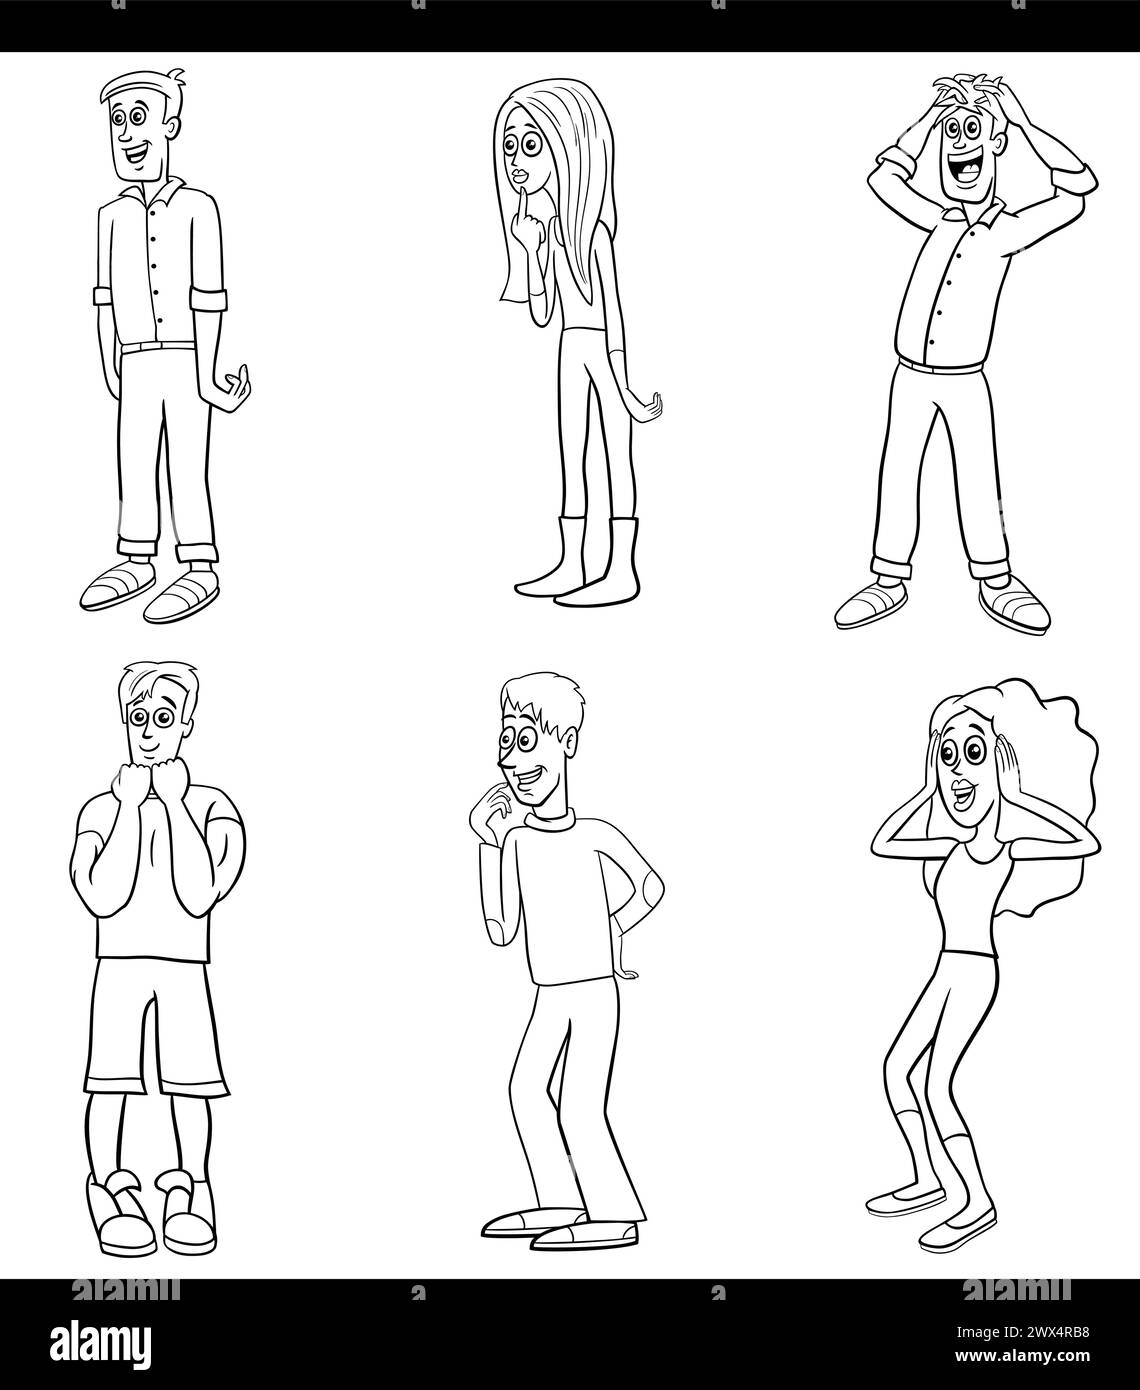 Zeichentrickillustration von lustigen überraschten jungen Leuten Charaktere setzen Malseite Stock Vektor